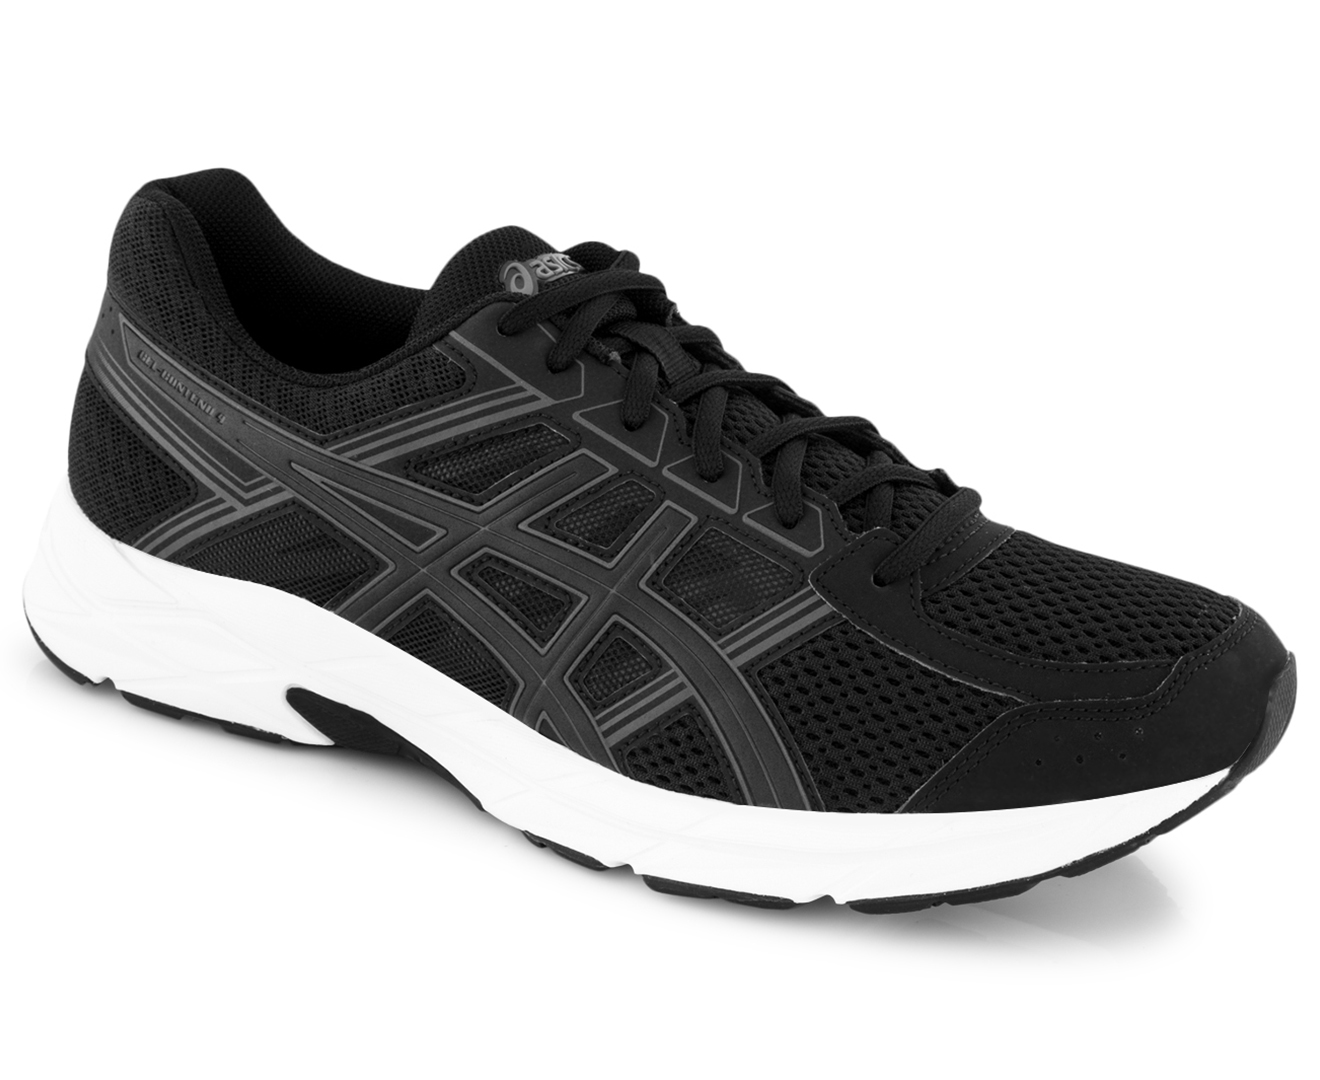 ASICS Men's GEL-Contend 4 Shoes - Black/Carbon/White | Catch.com.au